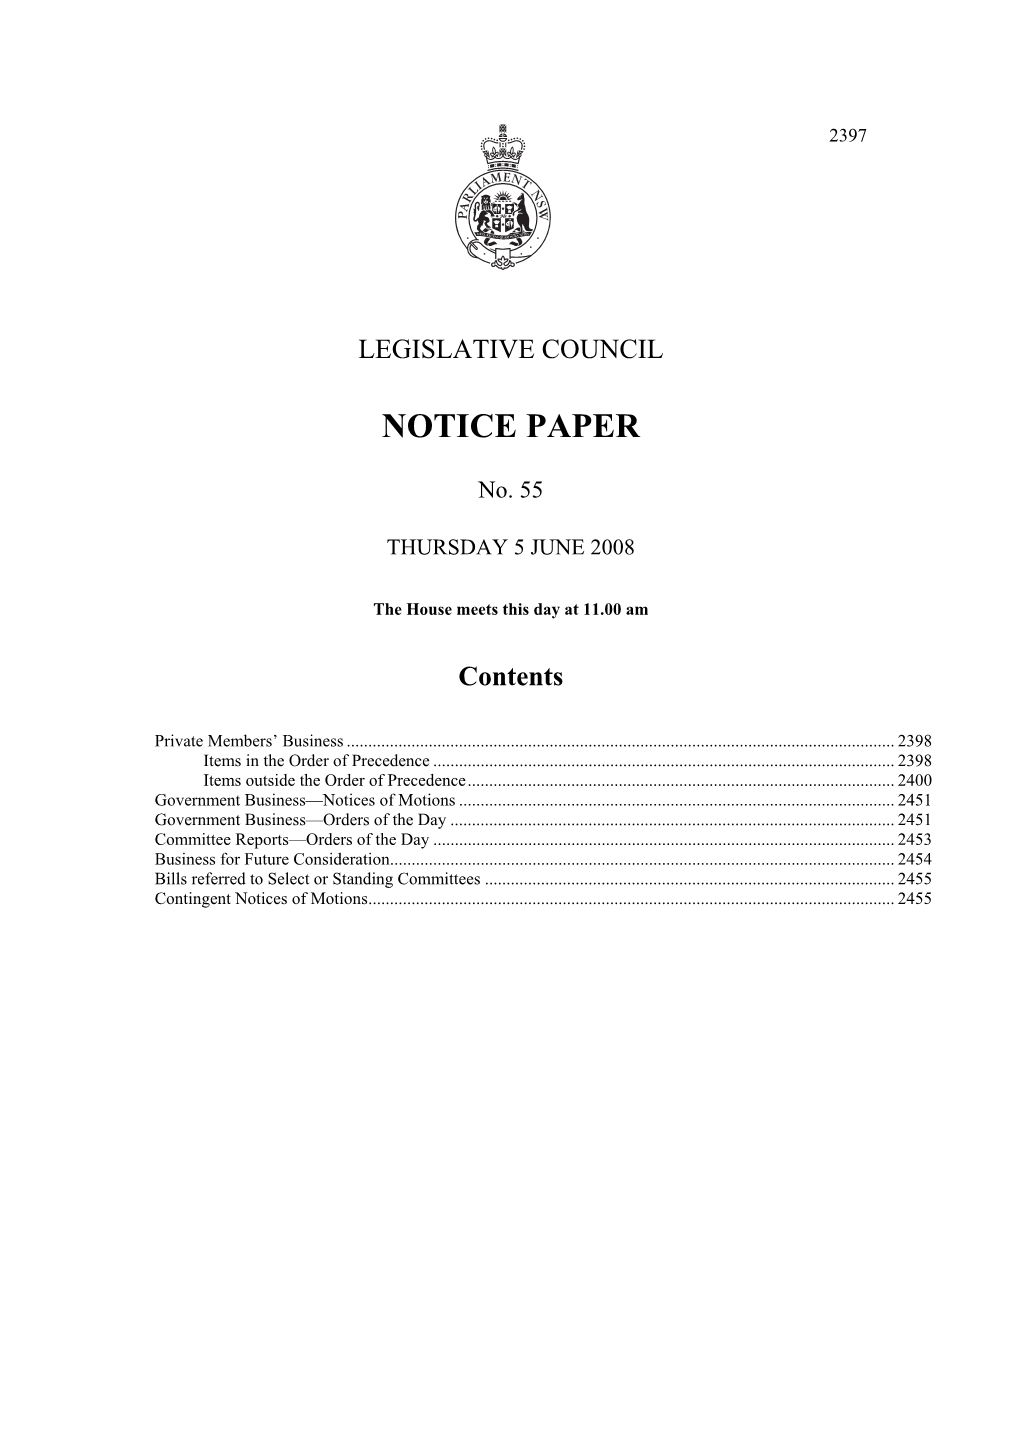 Notice Paper